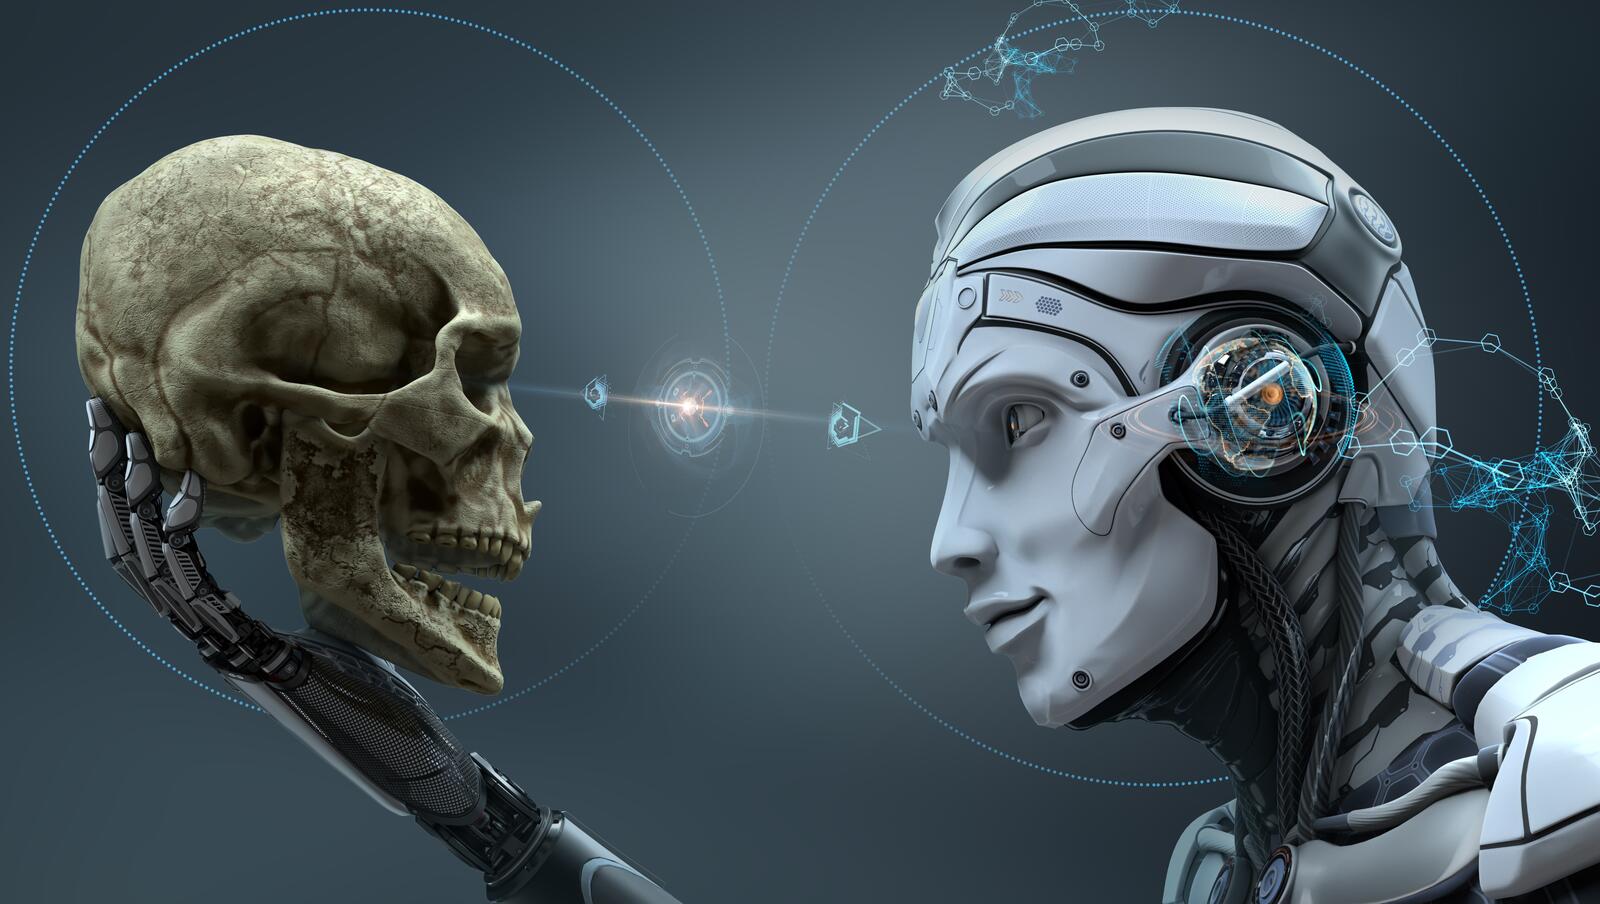 Бесплатное фото Киборг смотрит на человеческий череп